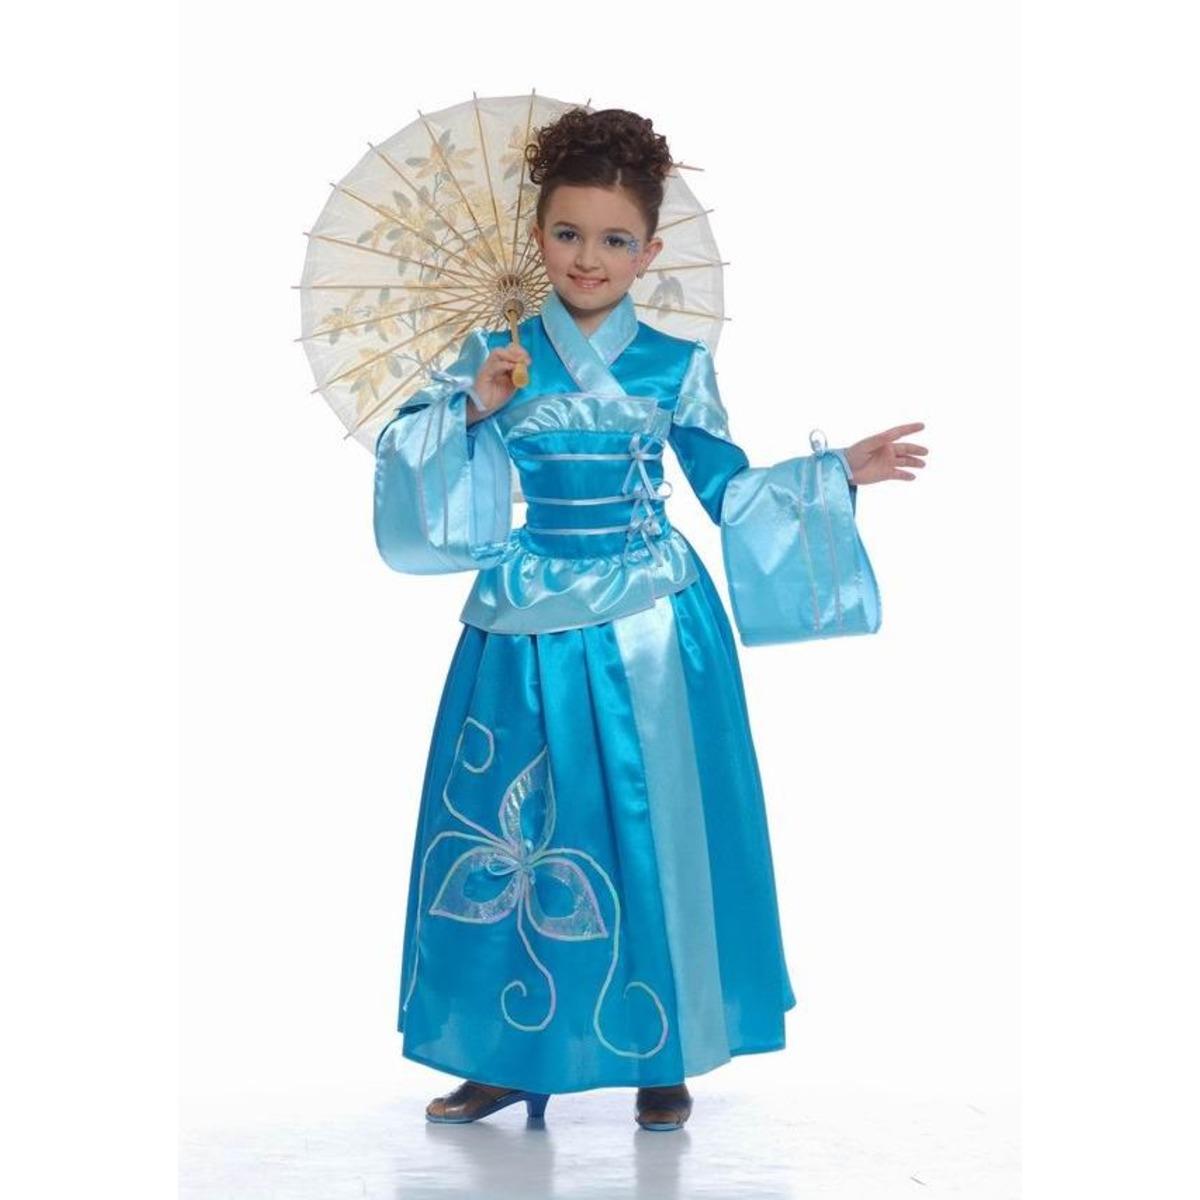 Costume traditionnel du monde pour enfant - 4 à 12 ans - Bleu